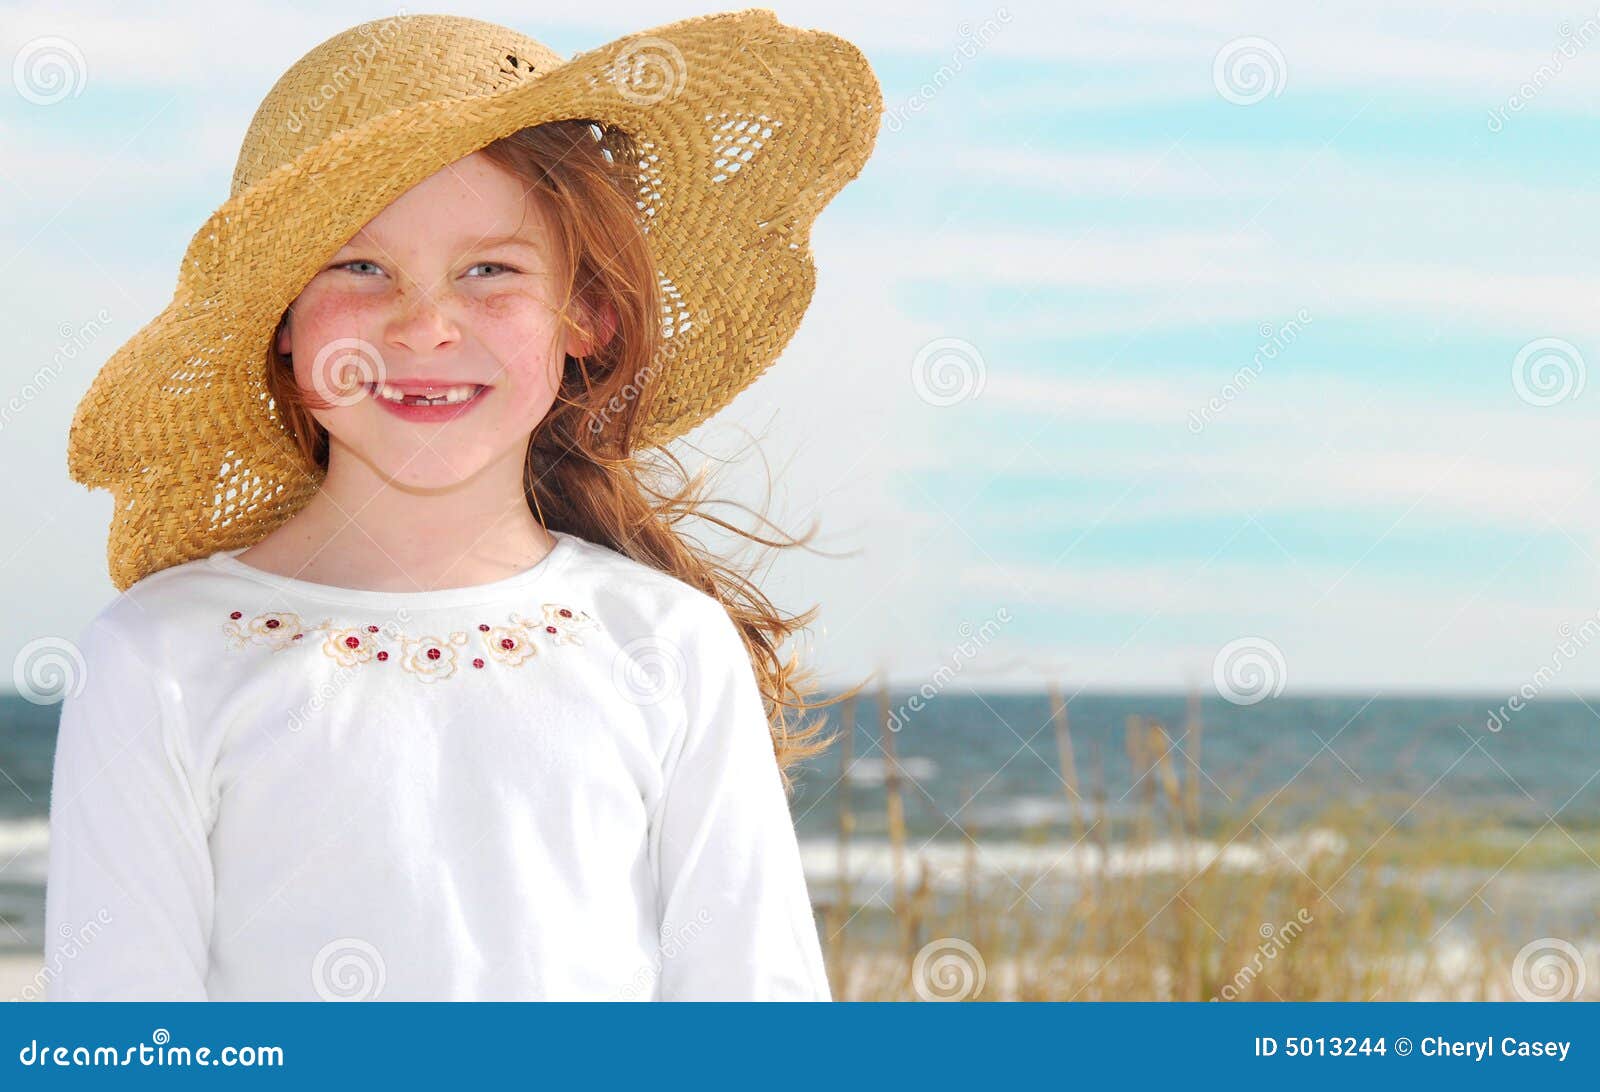 草帽子女士2017新款百搭户外旅游度假遮阳沙滩帽蝴蝶结防晒太阳帽-阿里巴巴